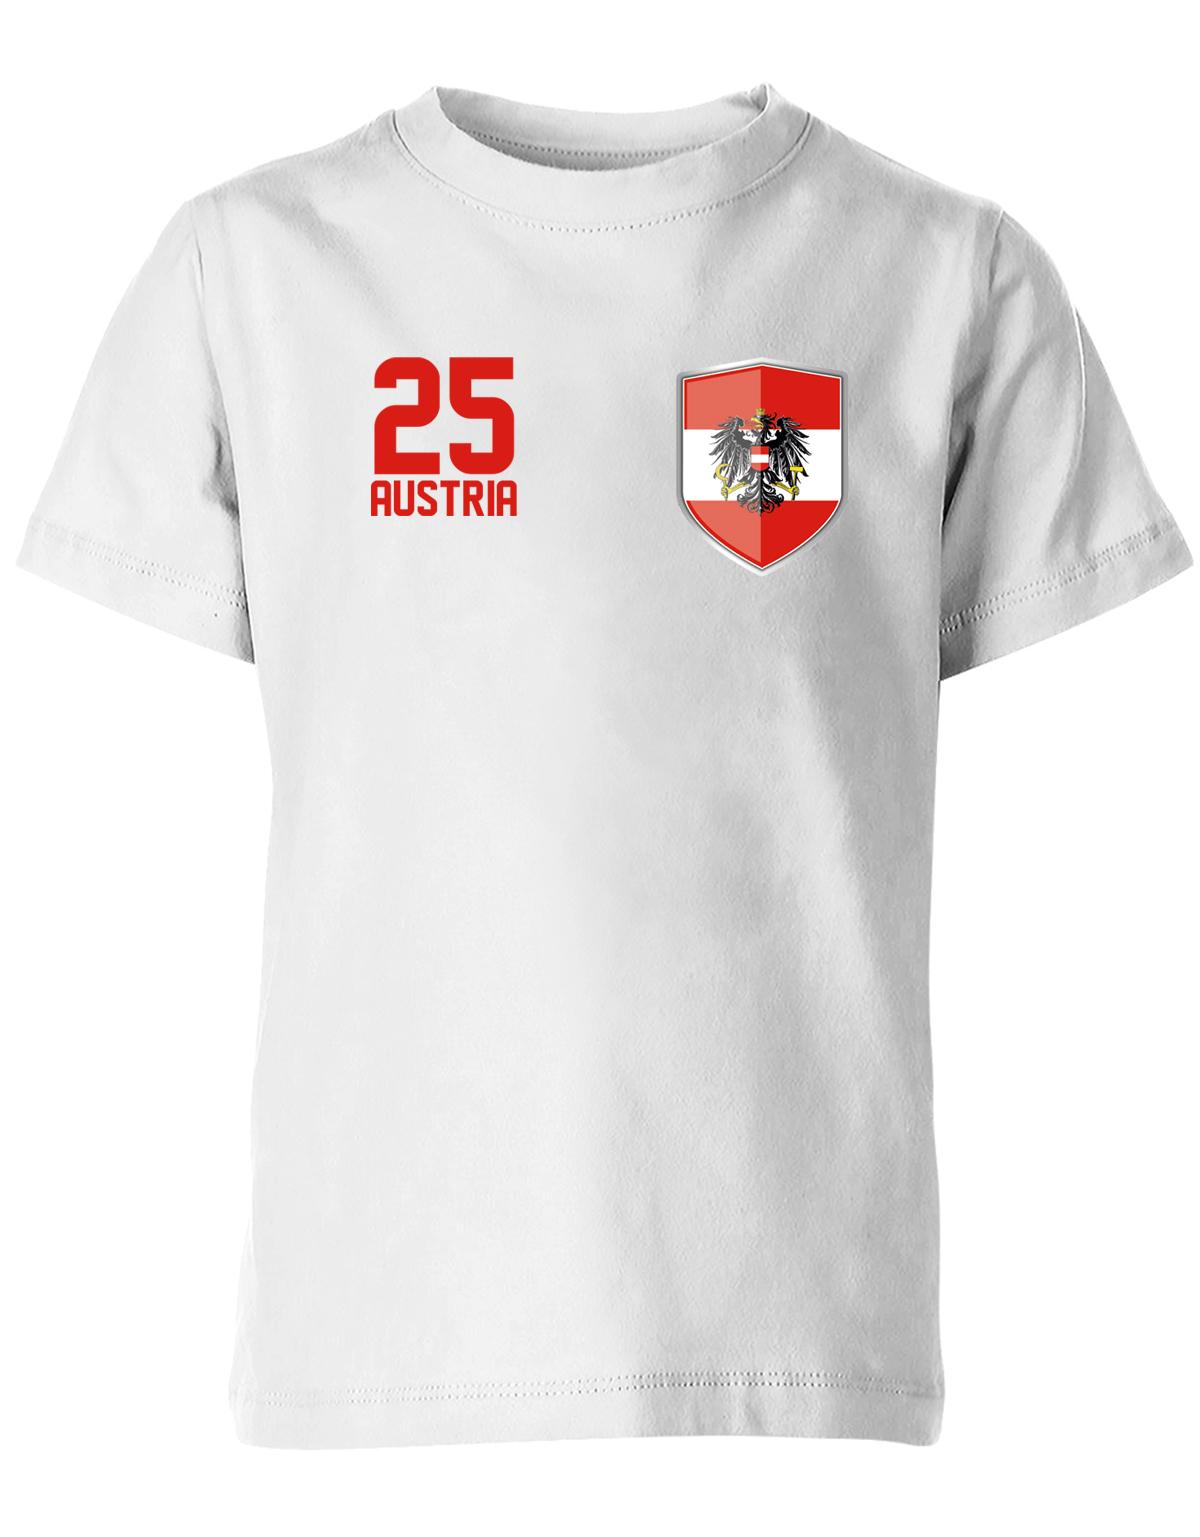 Austria-25-Wappen-Kinder-Shirt-Weiss